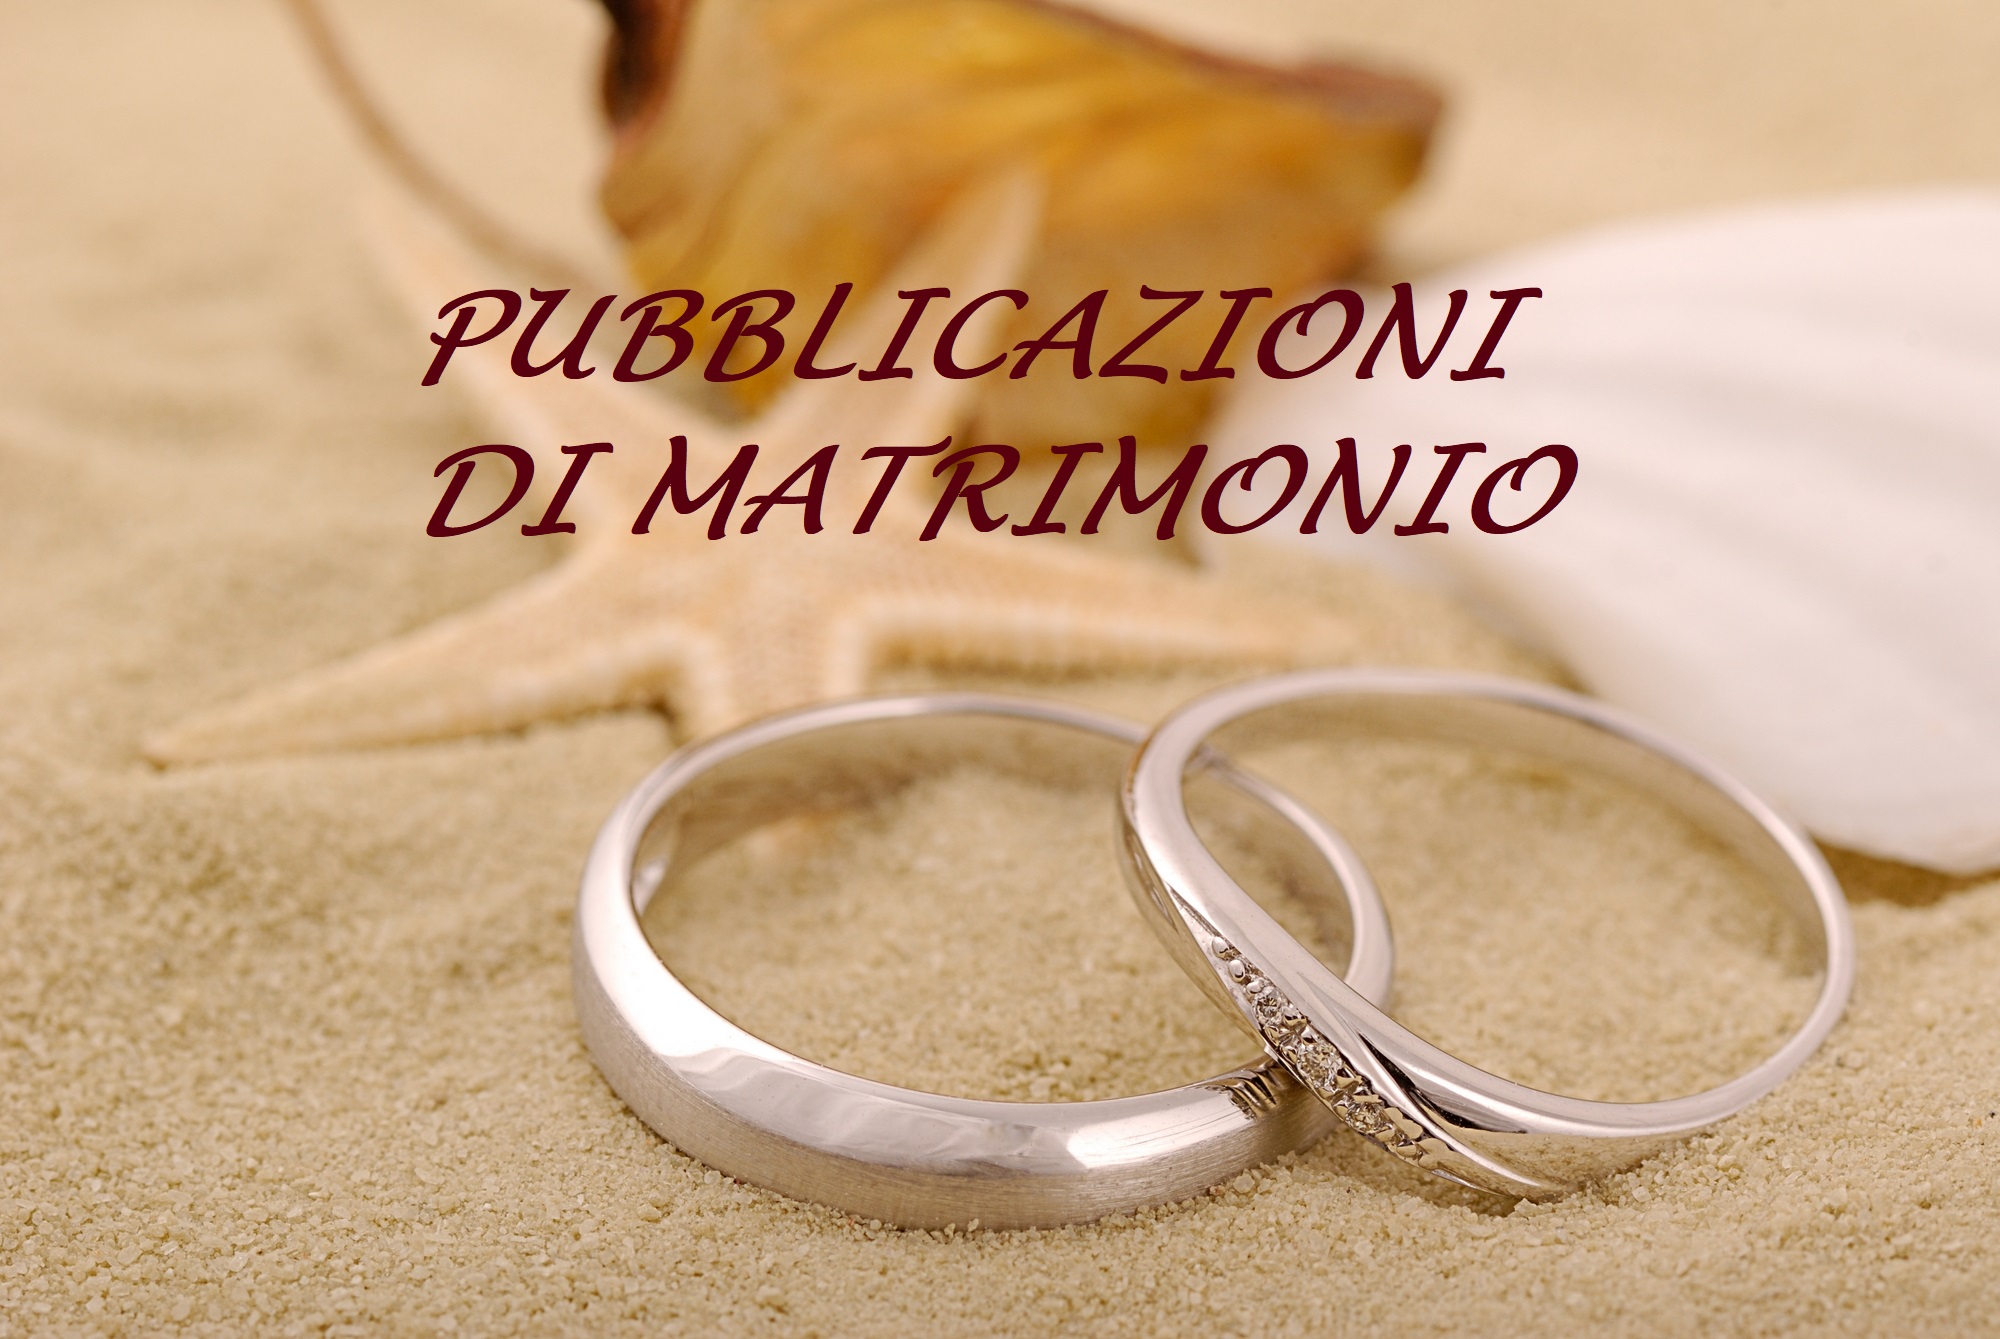 Prenotazione Appuntamento pubblicazione di Matrimonio